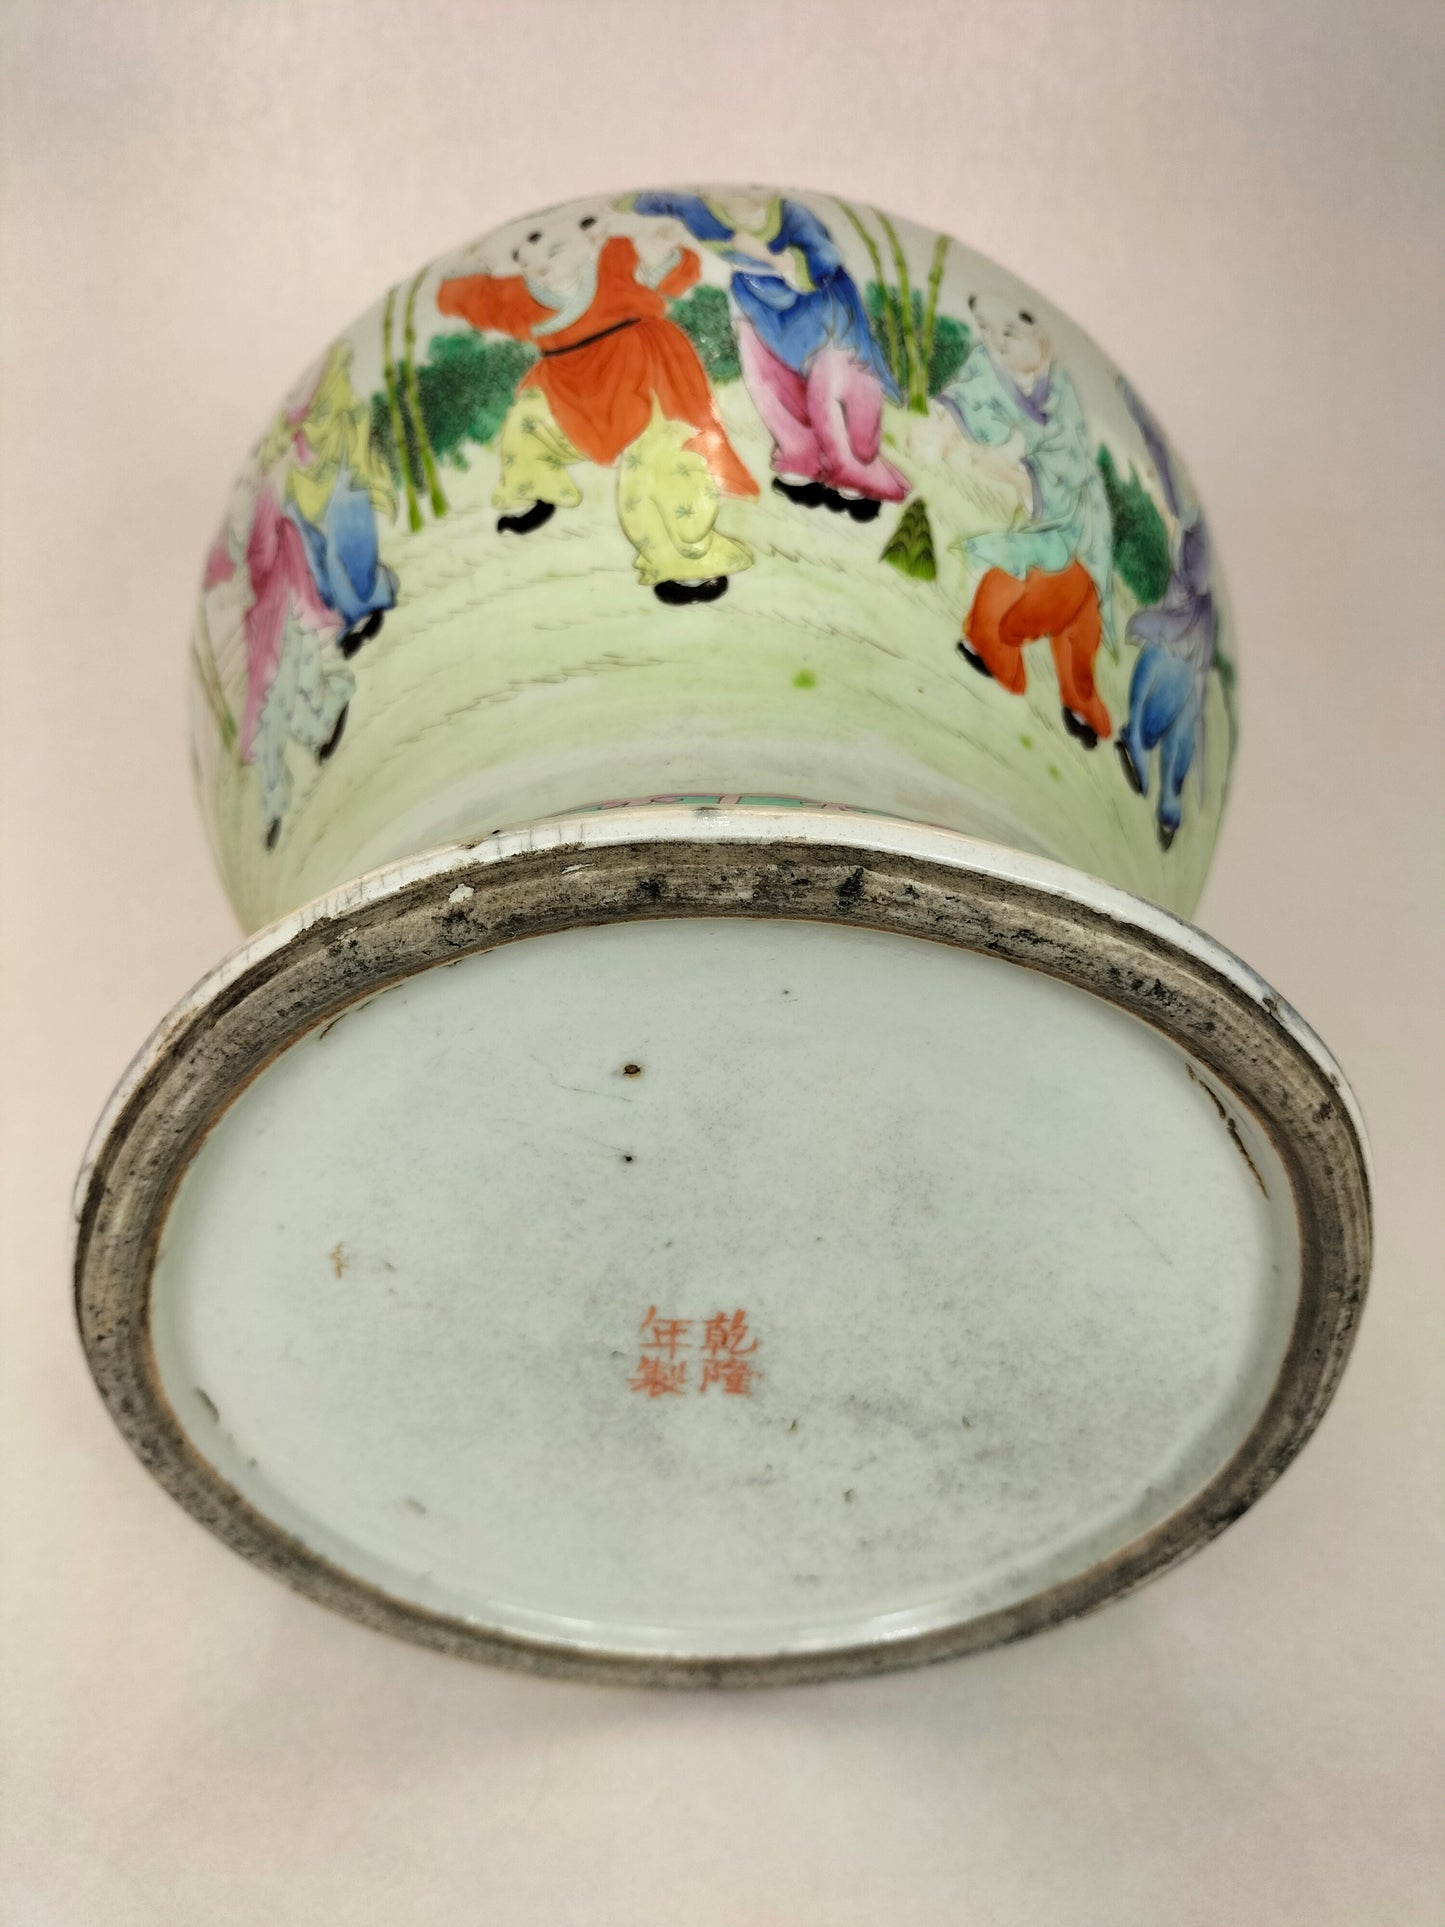 Vaso com tampa "happy boys" da família rosa chinesa antiga e rara // marca Qianlong - Dinastia Qing - século XIX